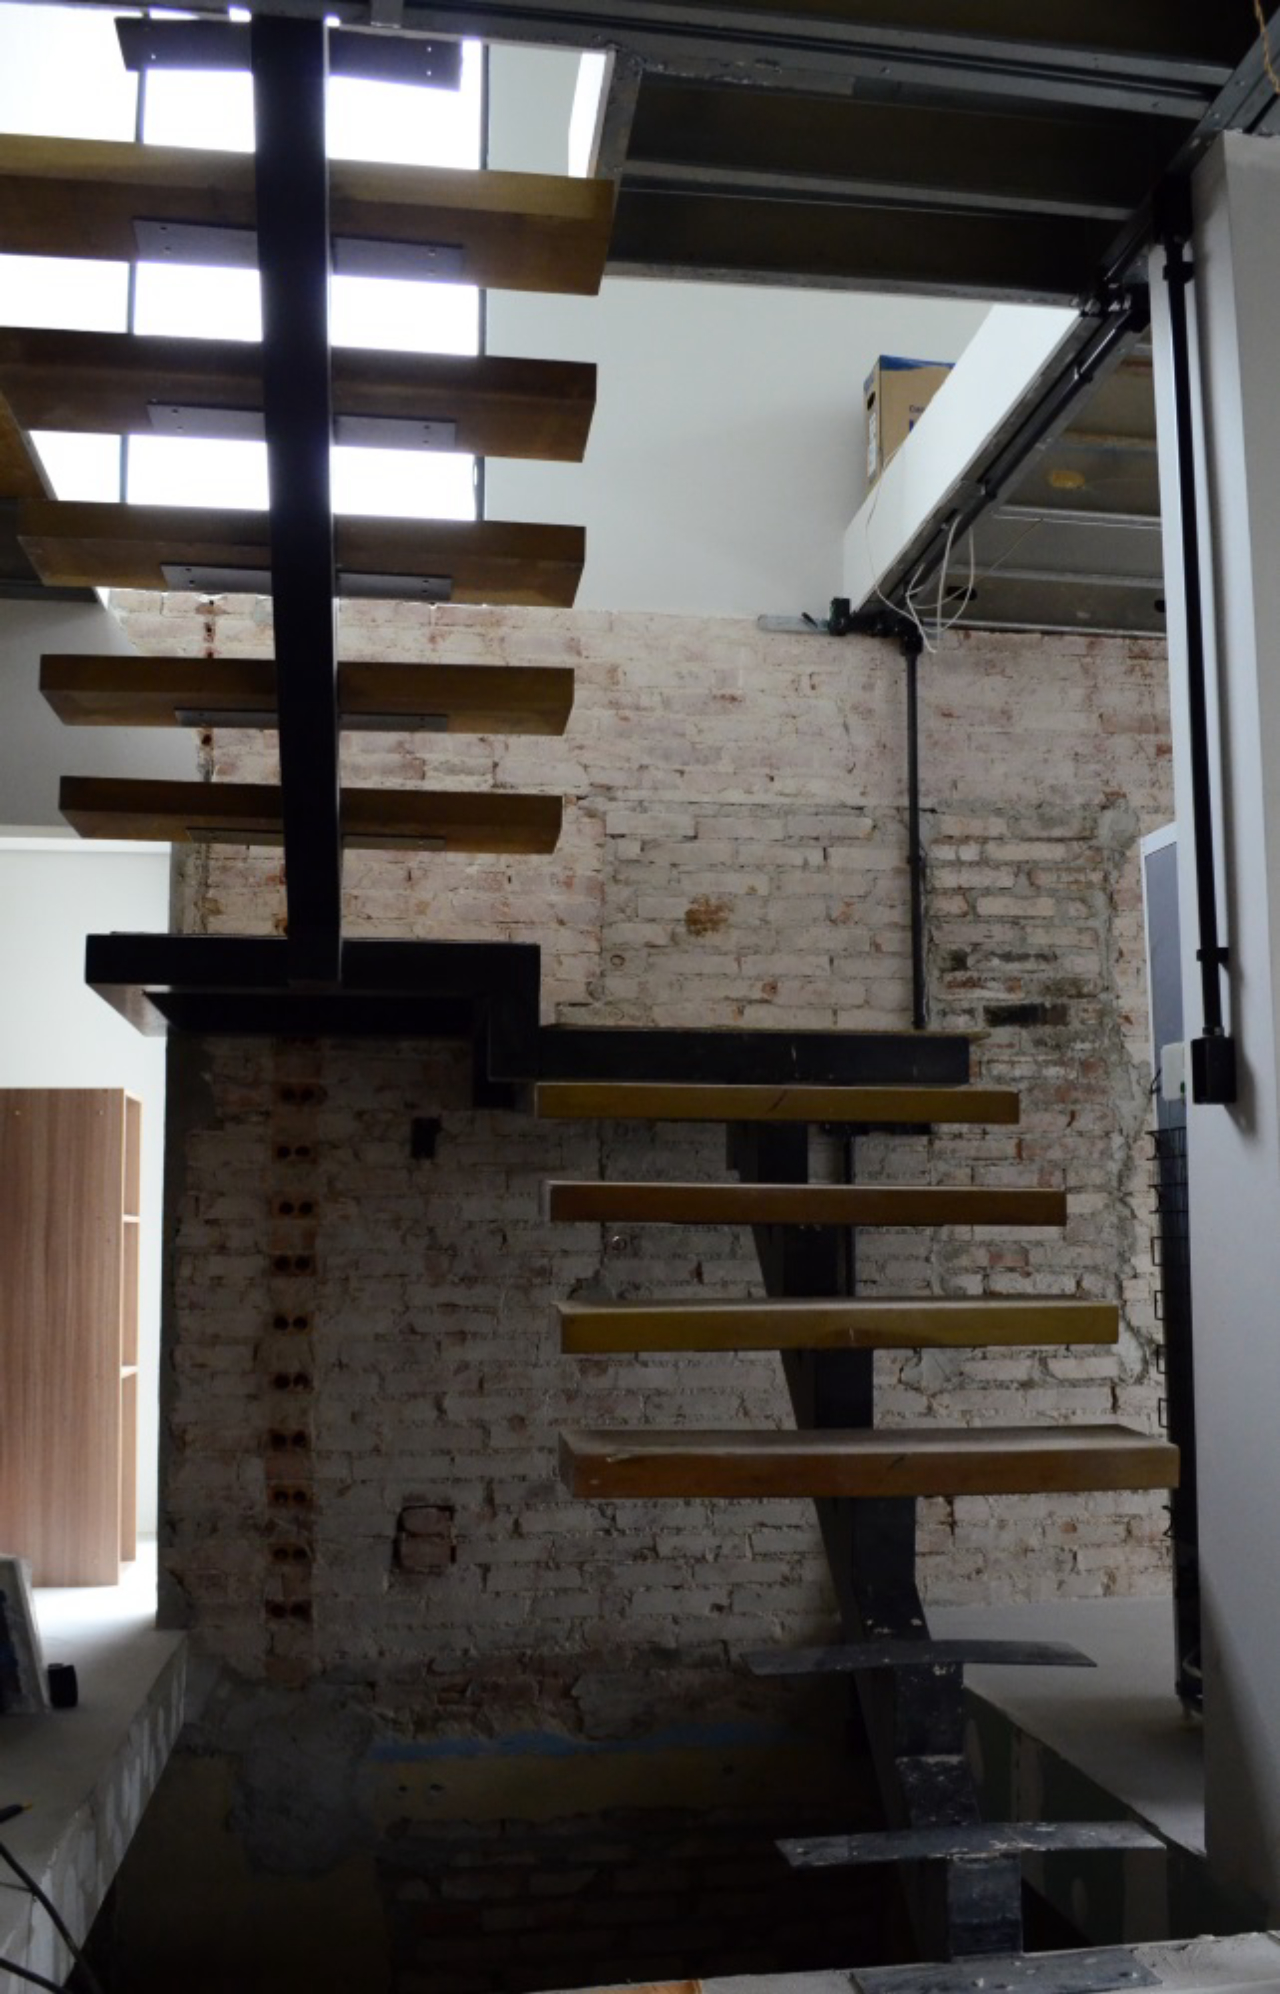 Escadas de madeira criam uma composição com os tijolos aparentes. Vãos entre os degraus permitirão que a luz natural chegue até o subsolo. Foto: Paulo Henrique de Jesus